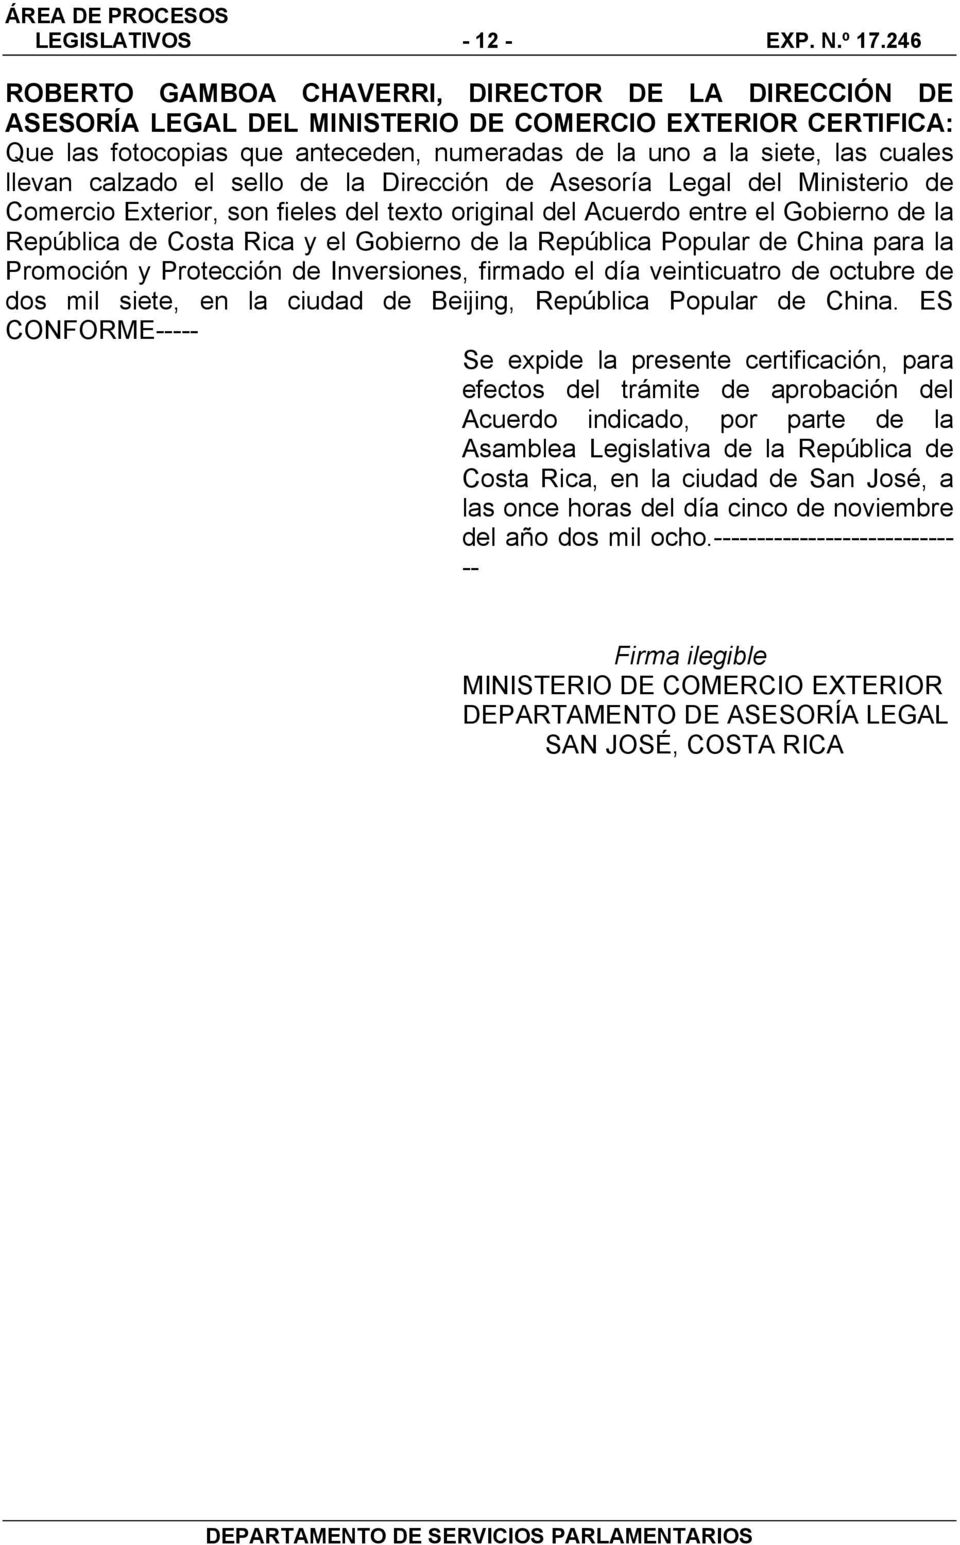 llevan calzado el sello de la Dirección de Asesoría Legal del Ministerio de Comercio Exterior, son fieles del texto original del Acuerdo entre el Gobierno de la República de Costa Rica y el Gobierno